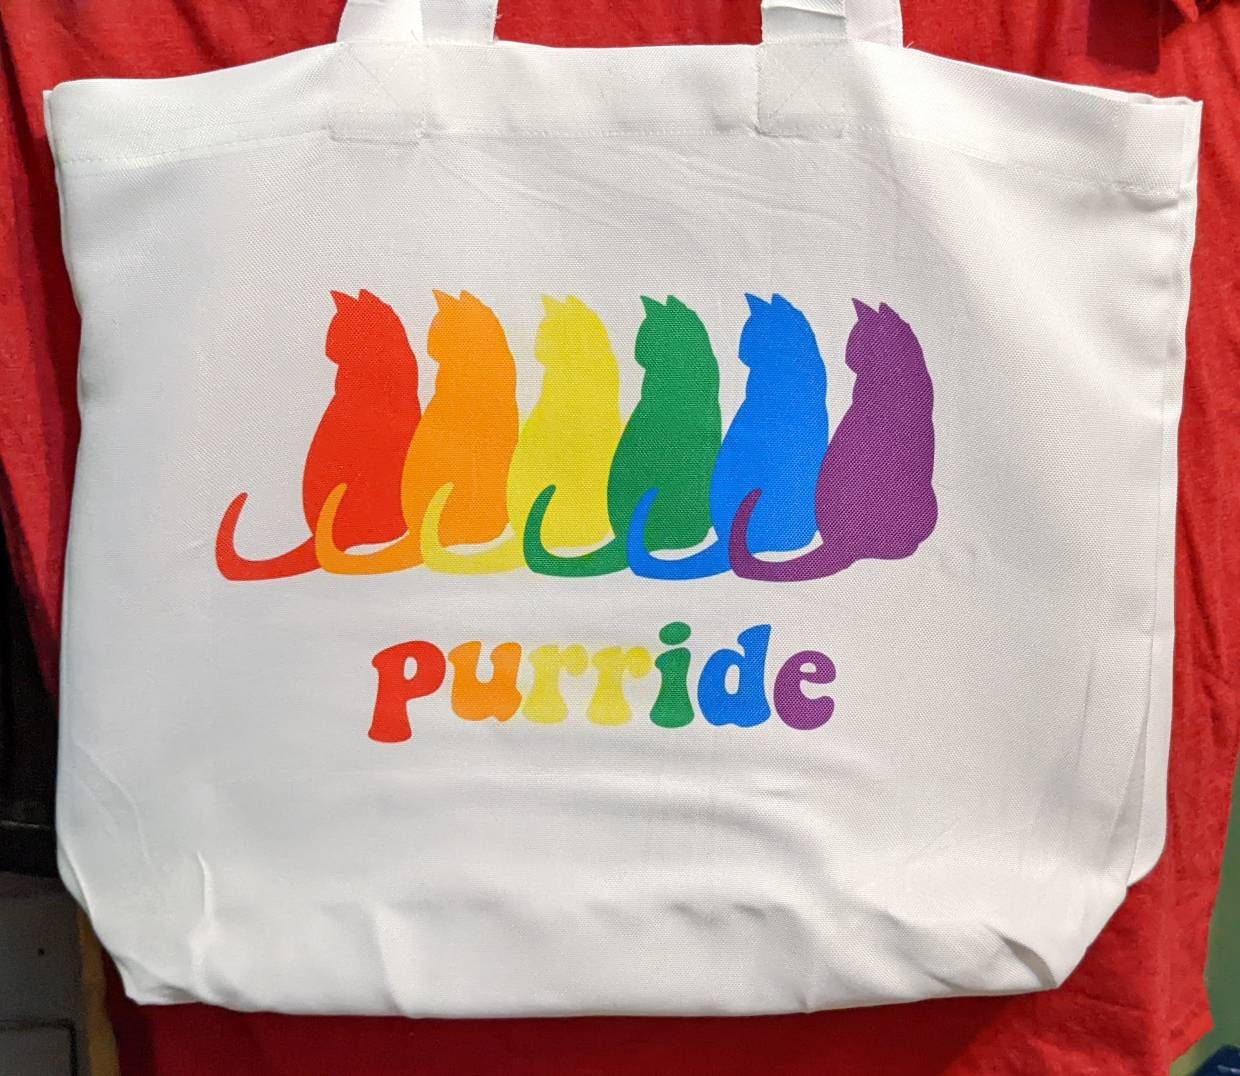 pride tote bag, rainbow cats purride carryall bag